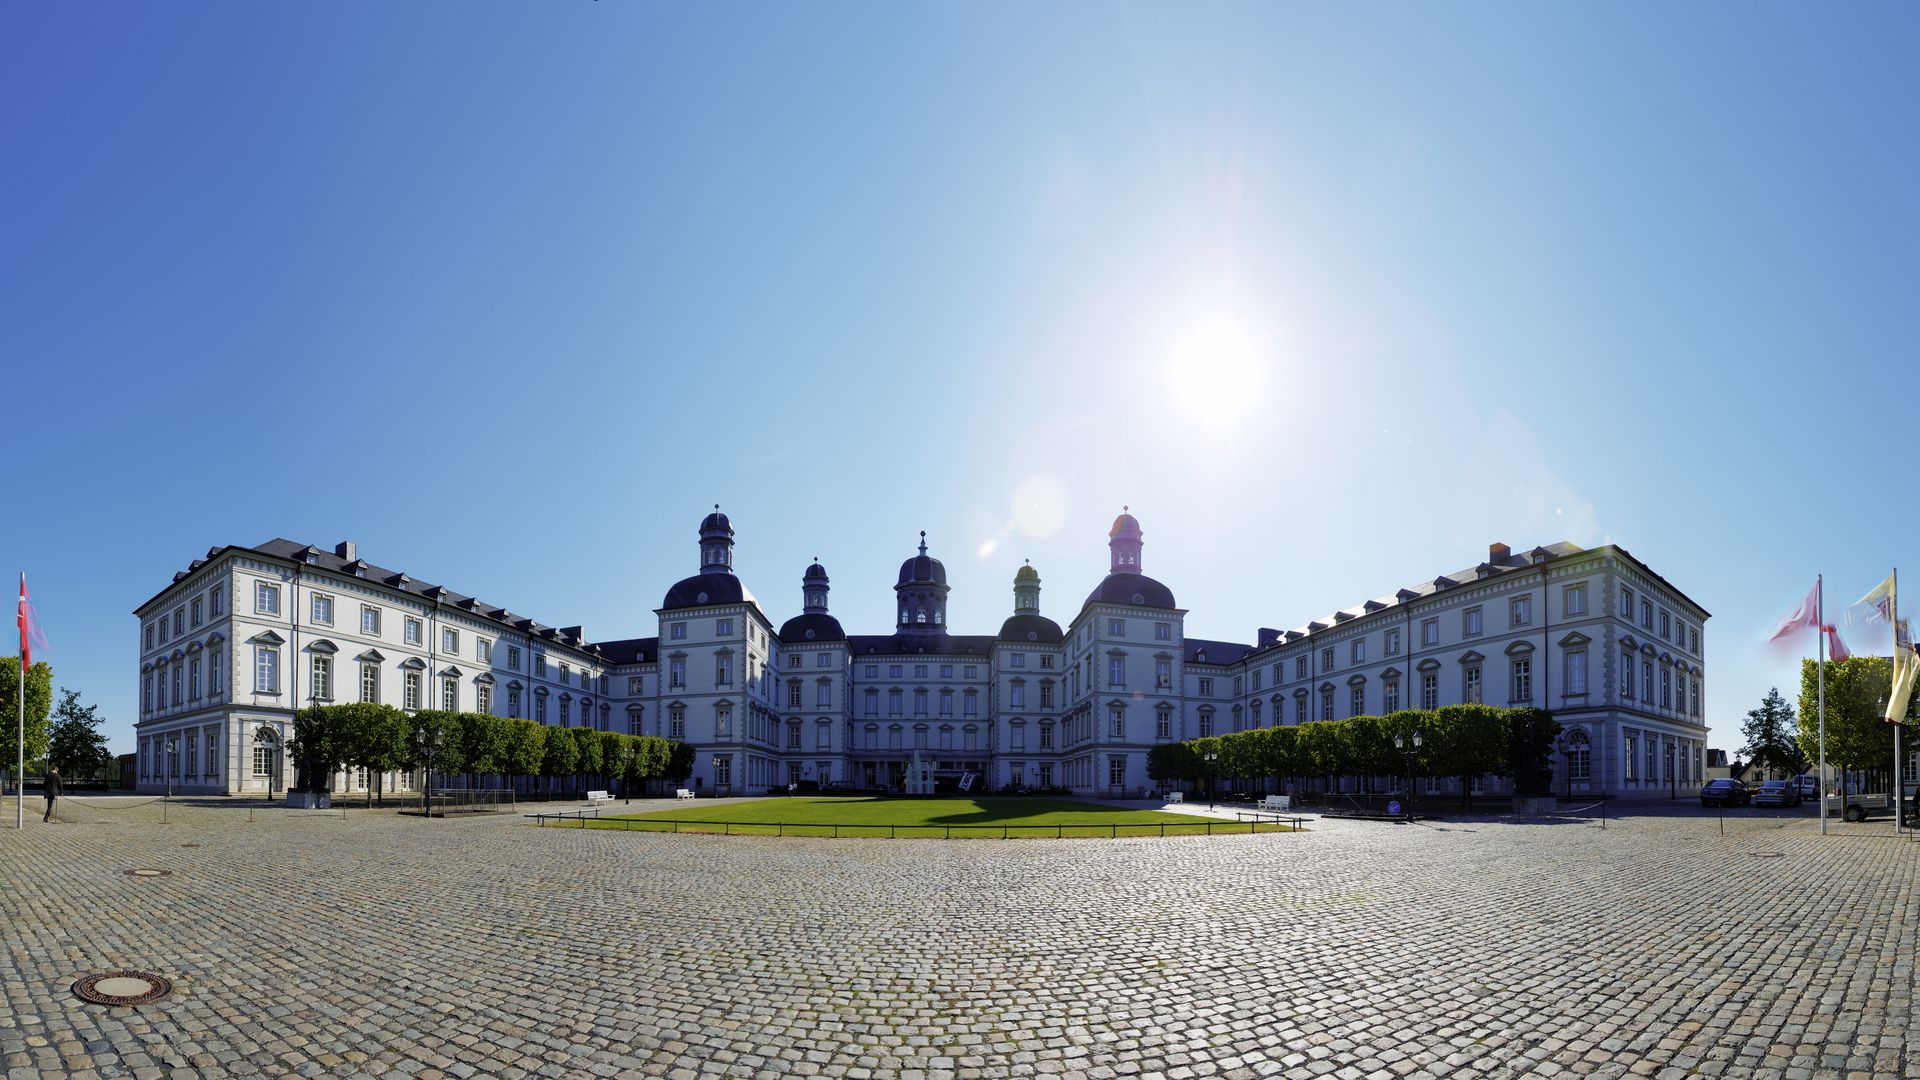 Panroamasicht auf das Grandhotel Schloss Bensberg von der Vorderseite im Gegenlicht mit strahlend blauem Himmel